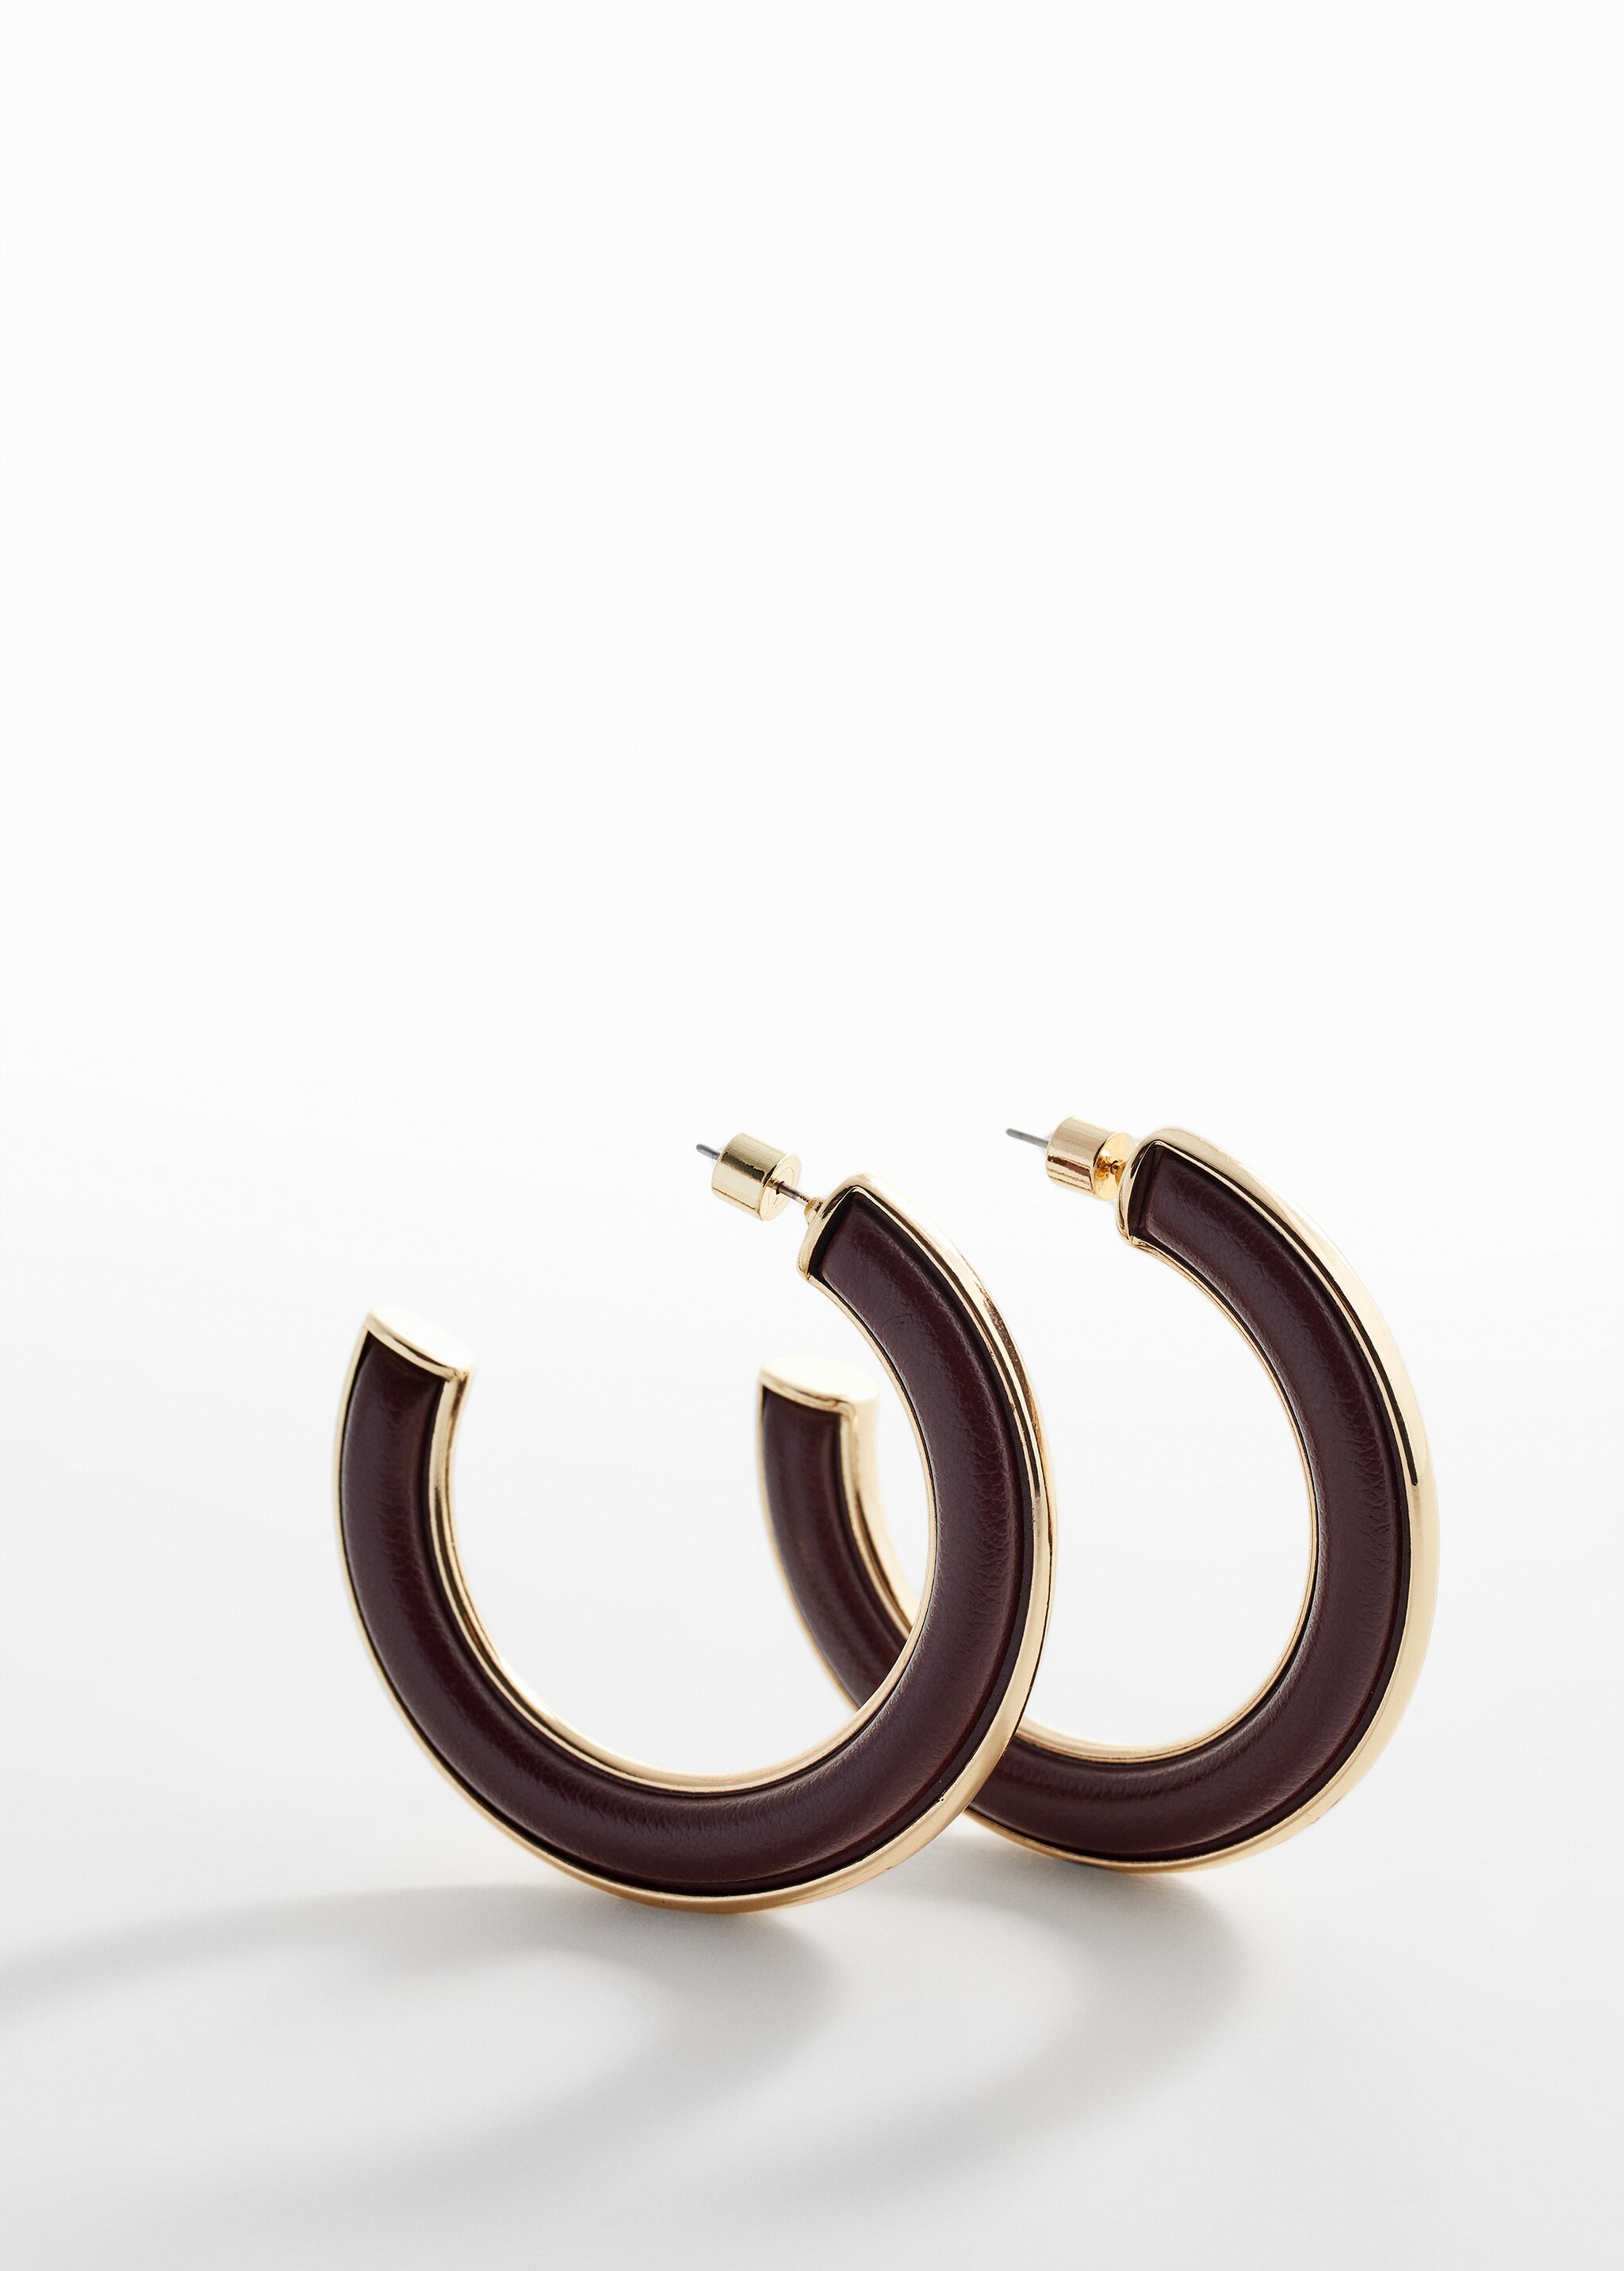 Two-tone hoop earrings - Medium plane